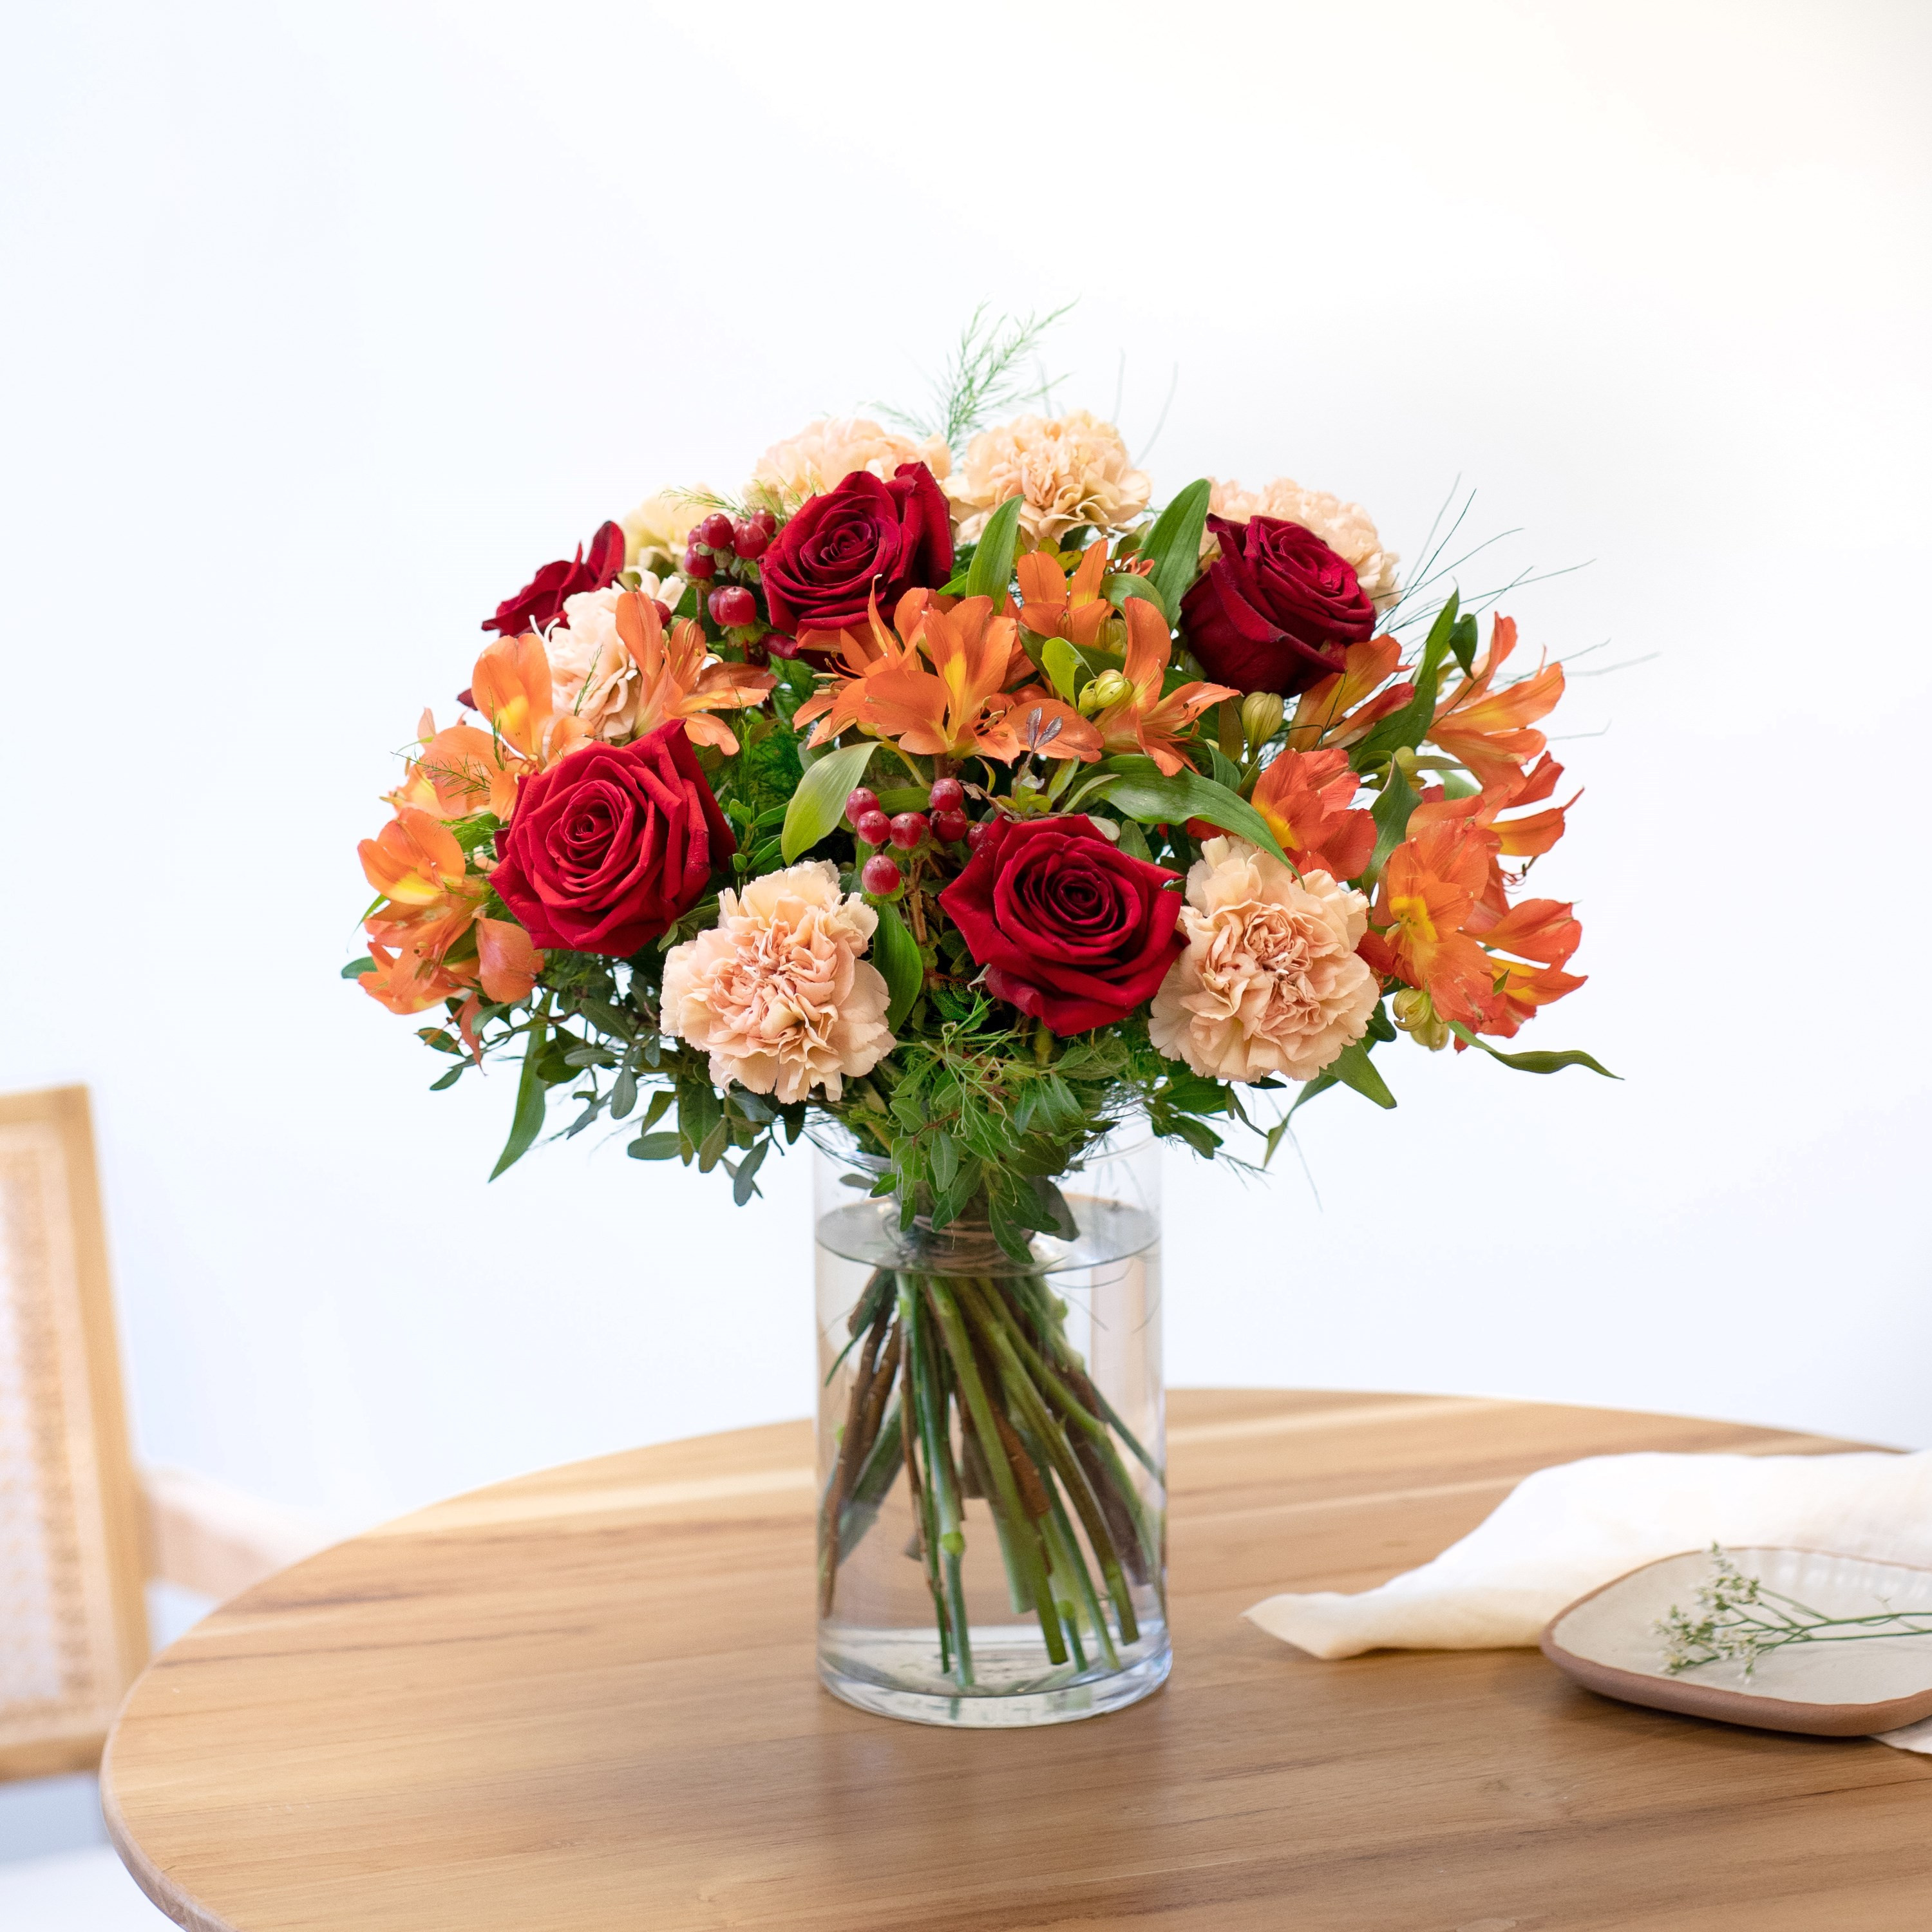 Abbraccio - elegancki bukiet kwiatów mieszanych z dodatkiem czerwonych róż oraz pomarańczowych alstromerii